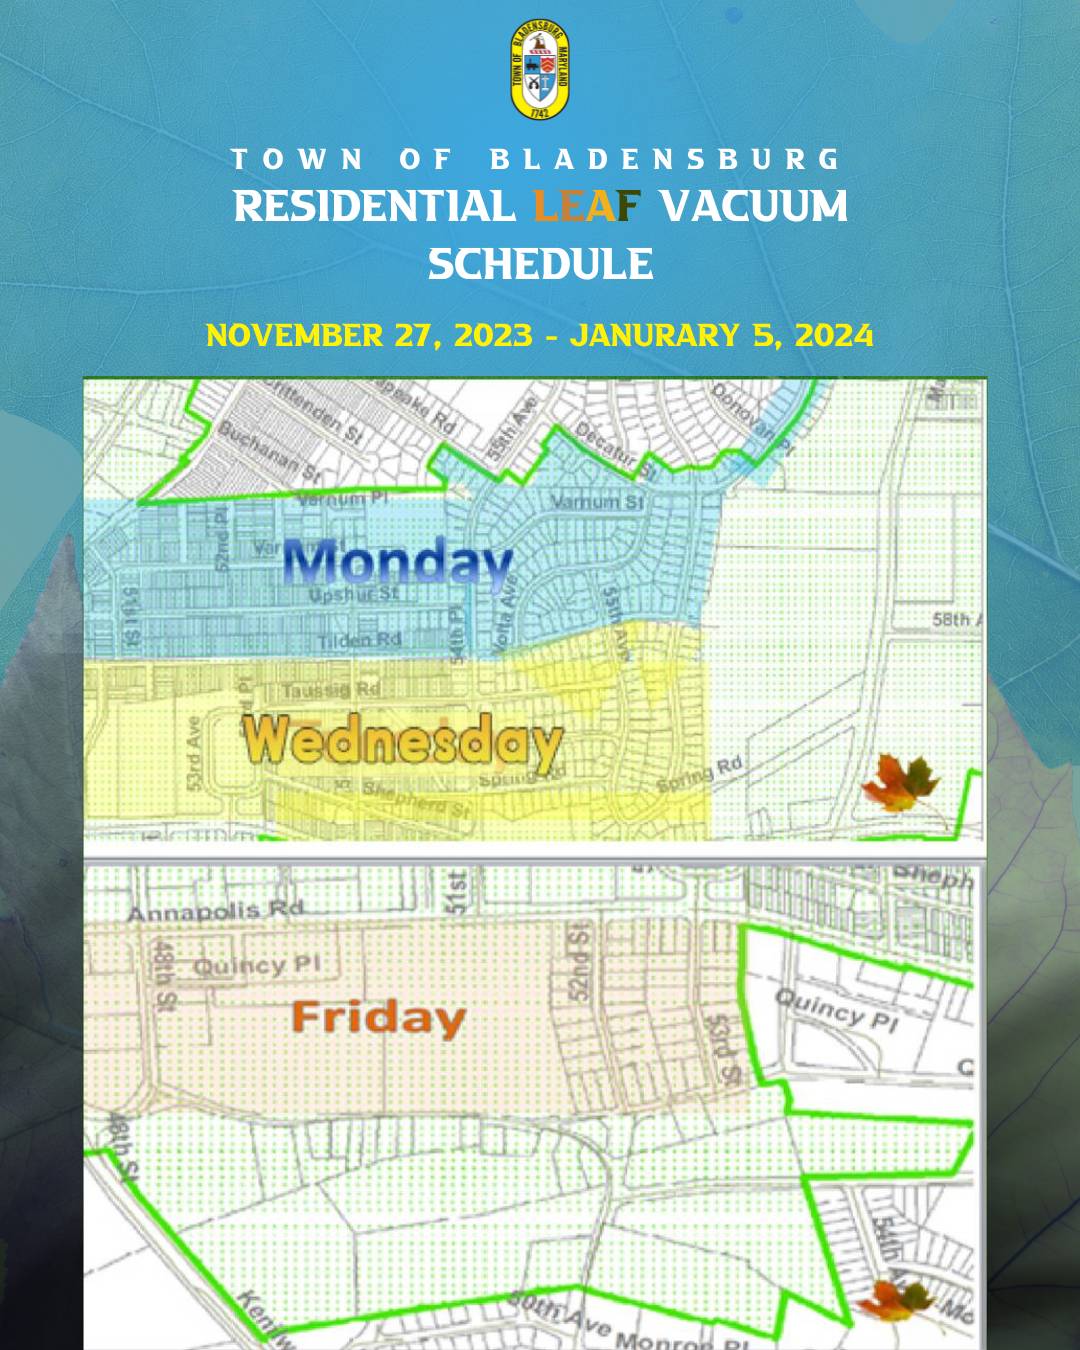 2023 Residential Leaf Vaccum Schedule (1) - Copy